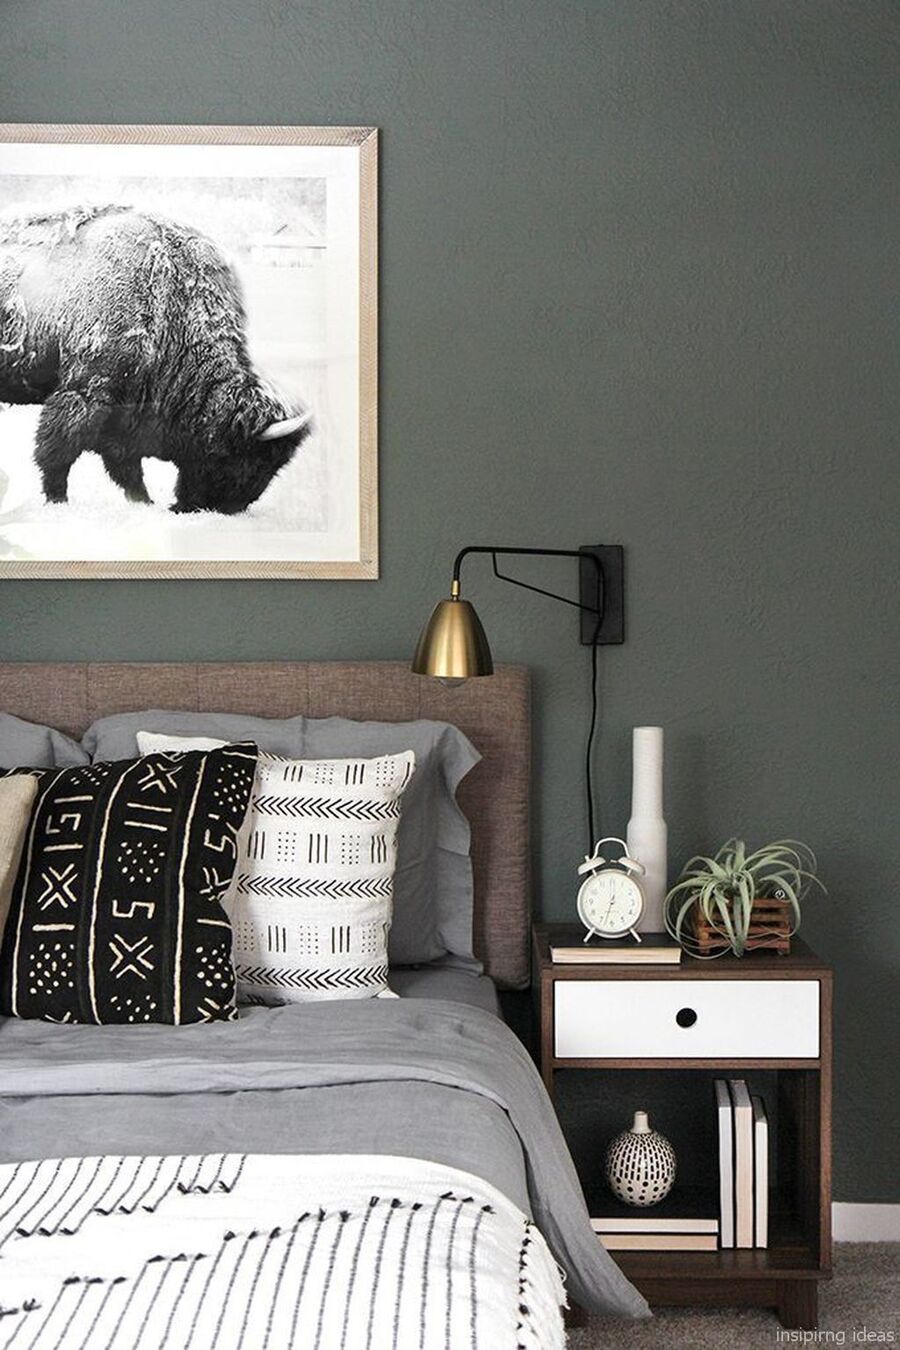 Detalle de un dormitorio con muro verde grisáceo oscuro y un cuadro con una fotografía en blanco y negro. Debajo está la cama con ropa de cama grises y cojines con diseños en blanco, negro y gris. Junto a la cama hay un velador de madera con cajón blanco.